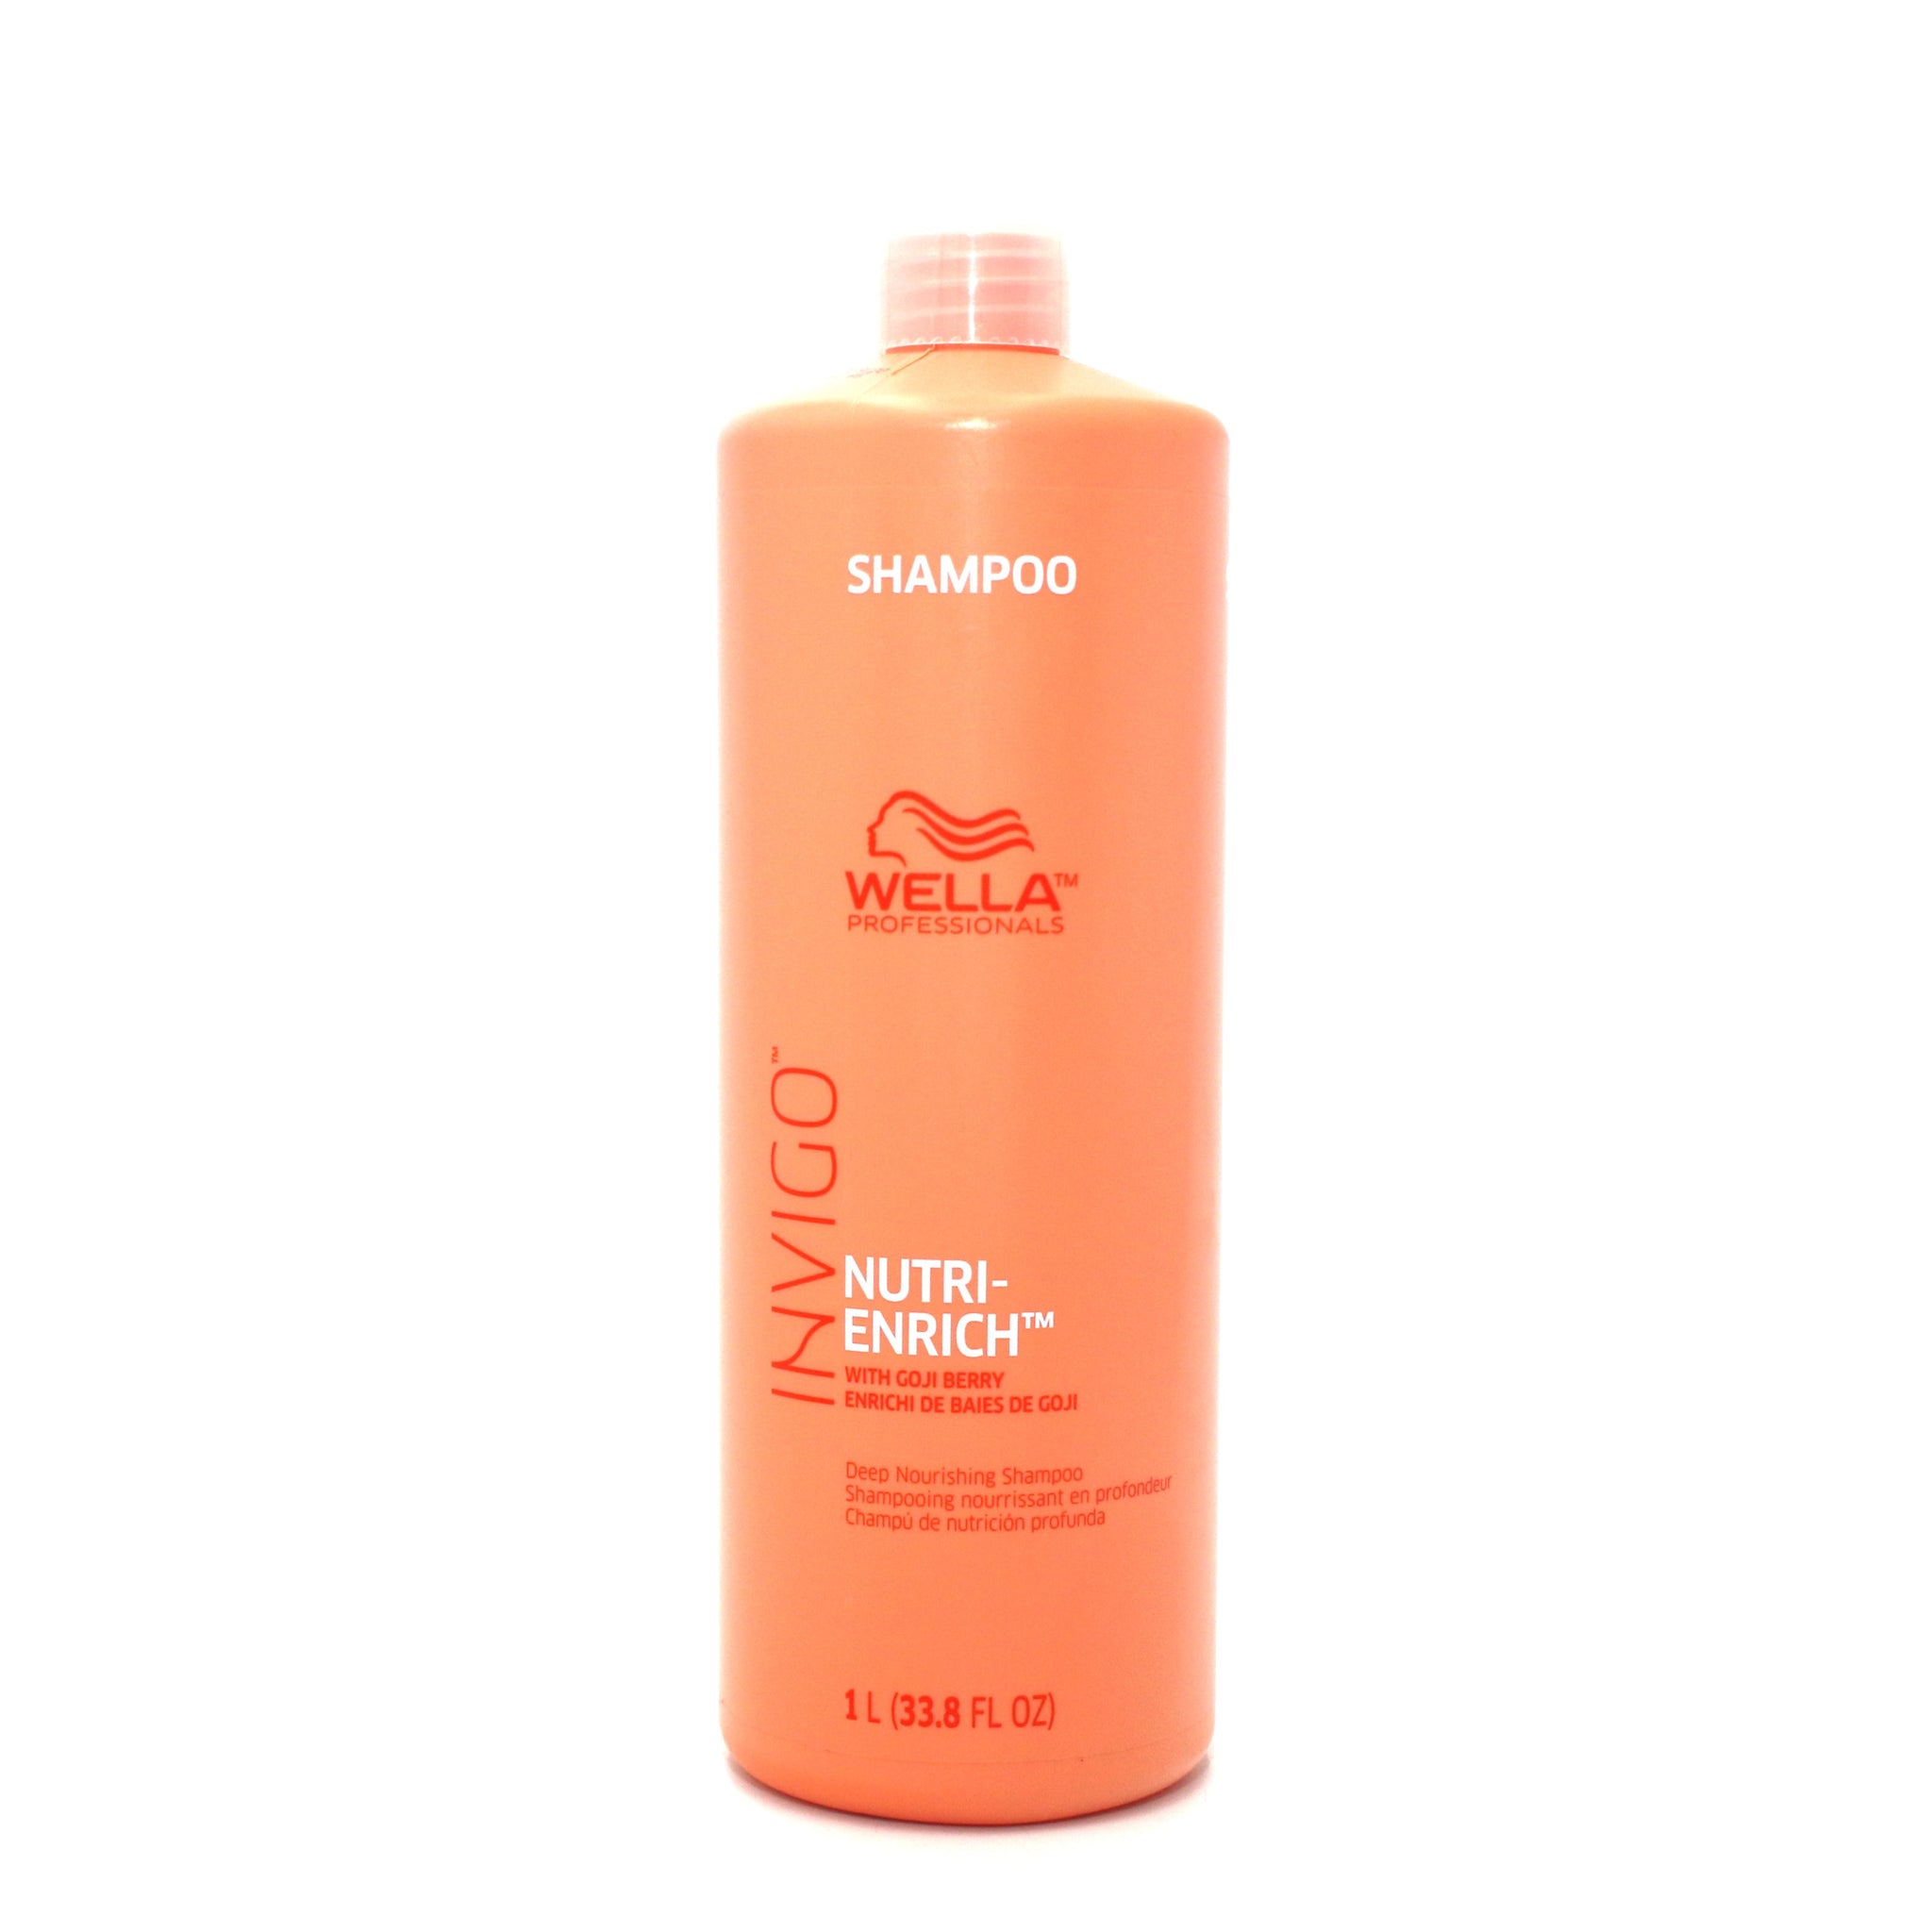 Wella Invingo Nutri-Enrich Deep Nourishing Shampoo 33.8 oz